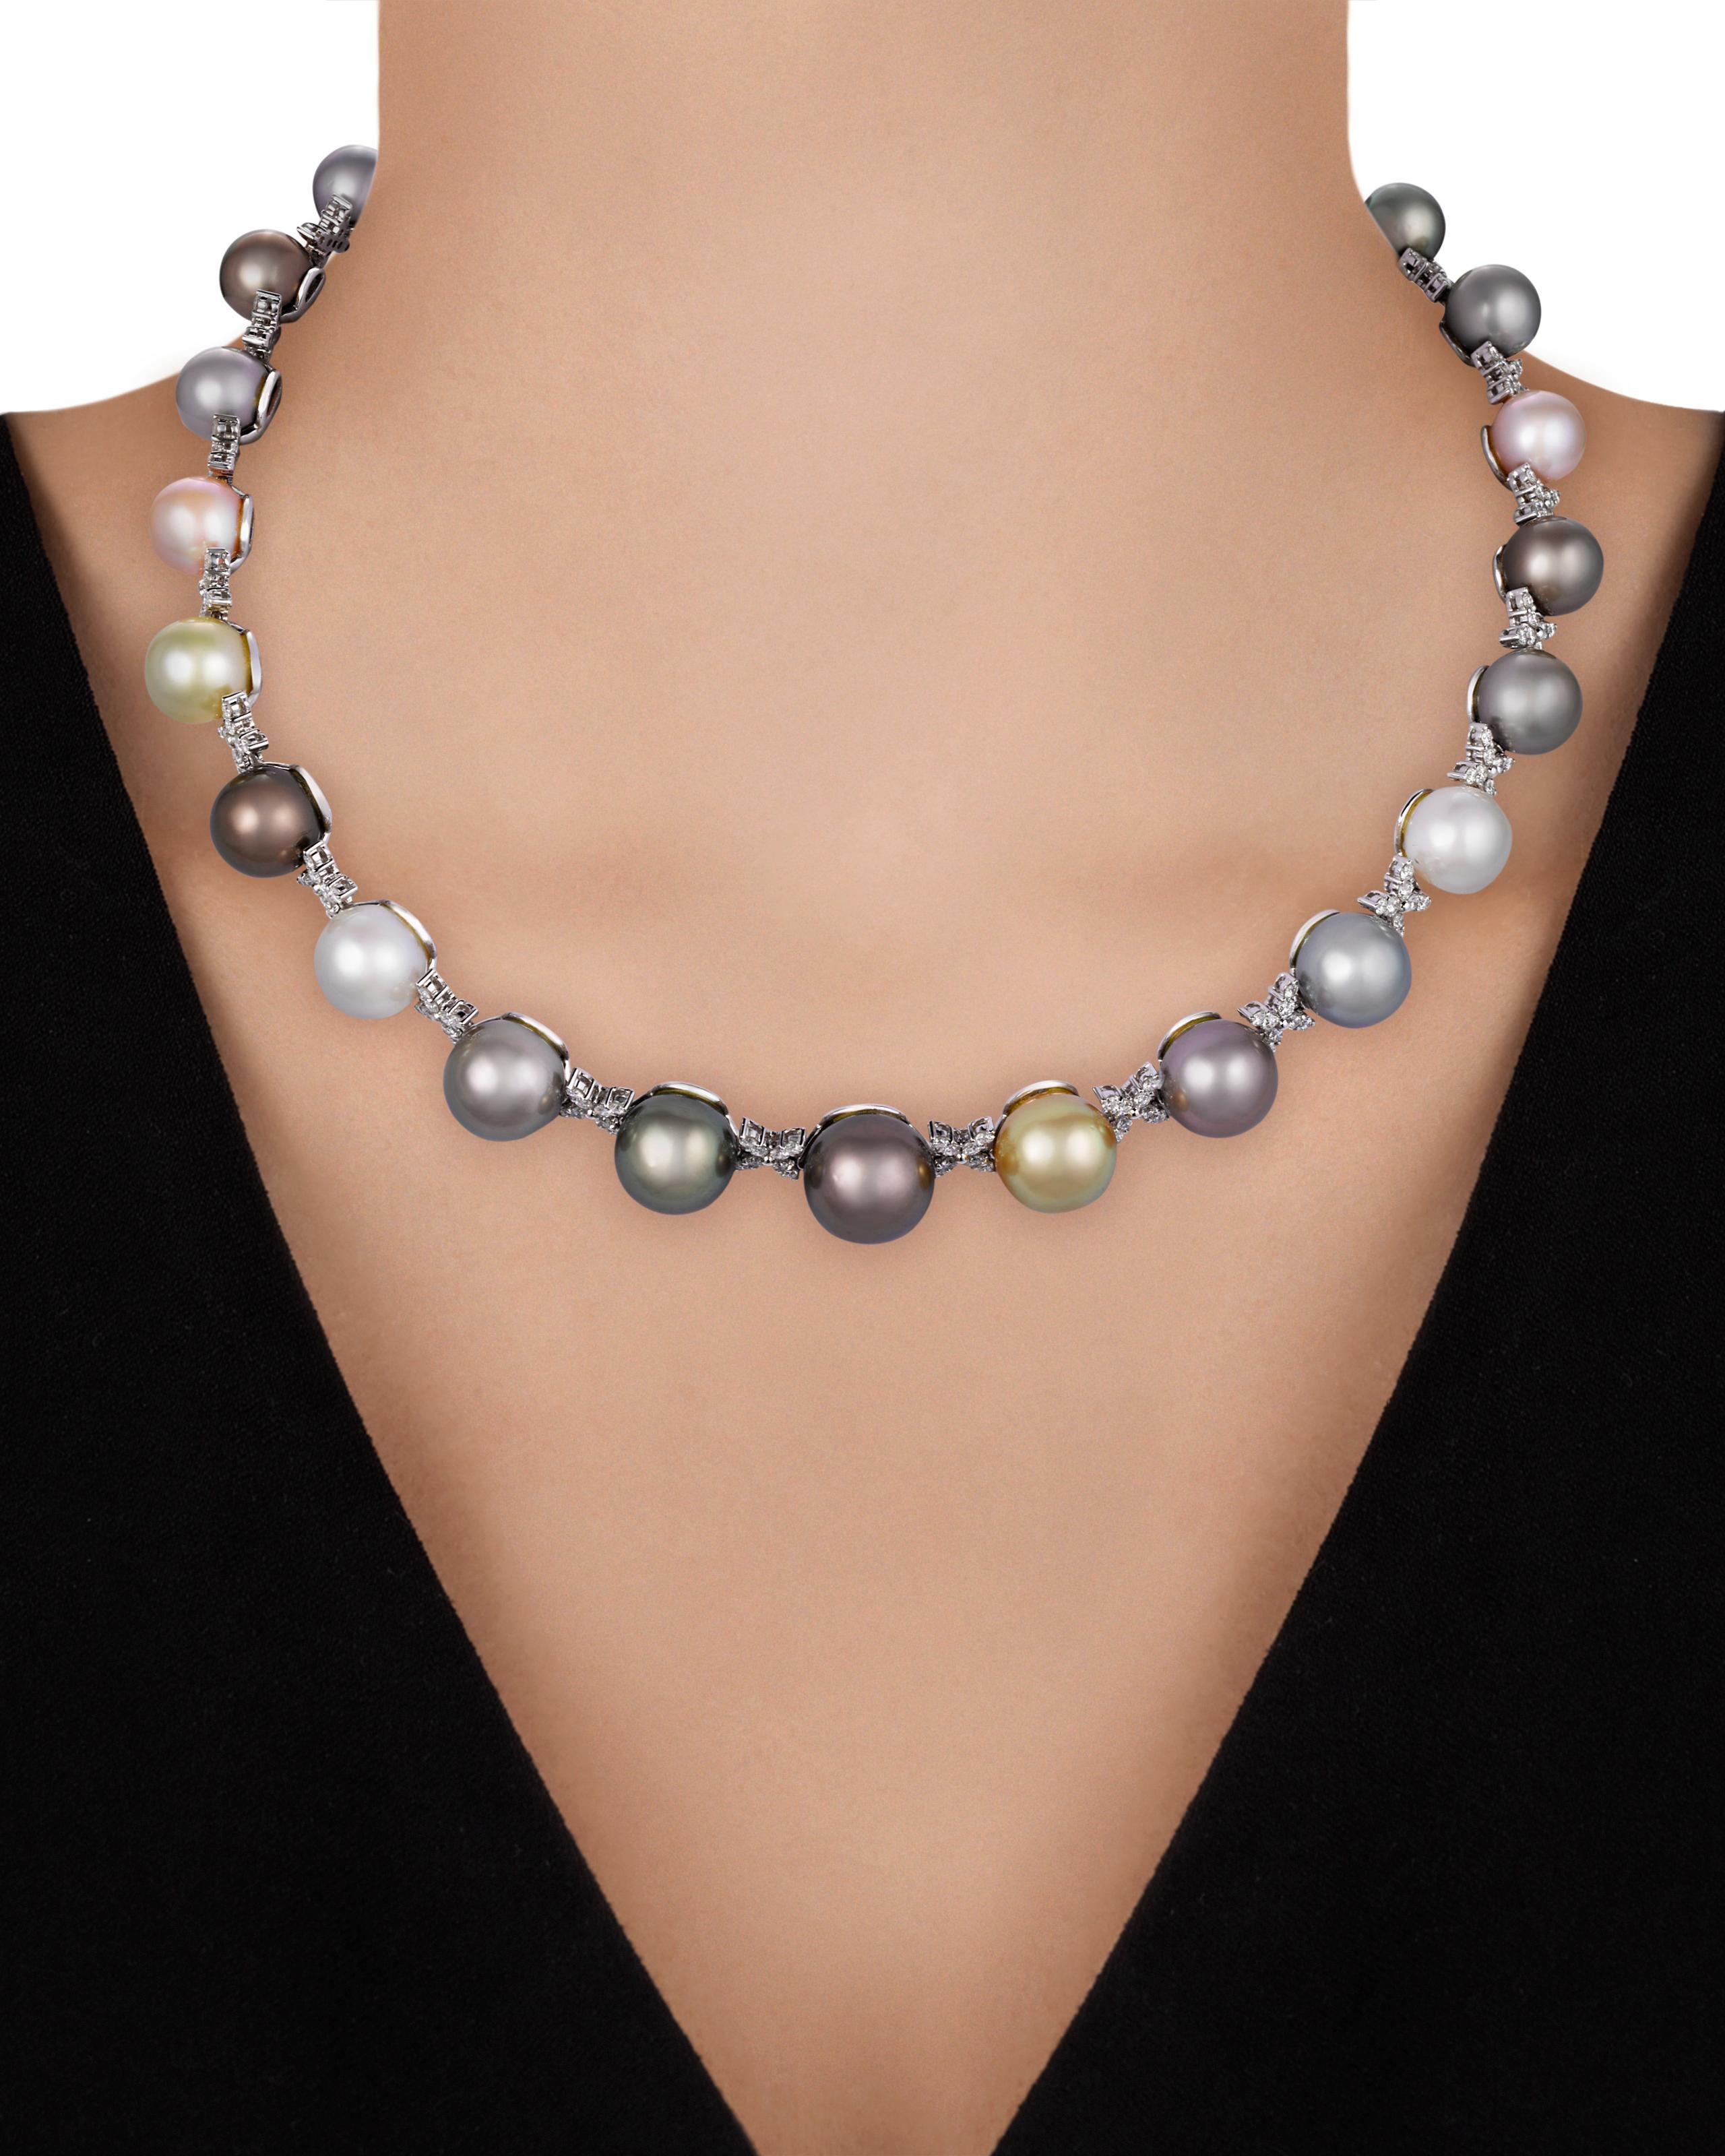 D'une qualité et d'un design exceptionnels, ce brin unique de perles présente un large éventail de couleurs. Affichant des teintes allant du blanc lustré et des nuances de gris au noir profond et aux ors vibrants, ces grandes perles rayonnent de